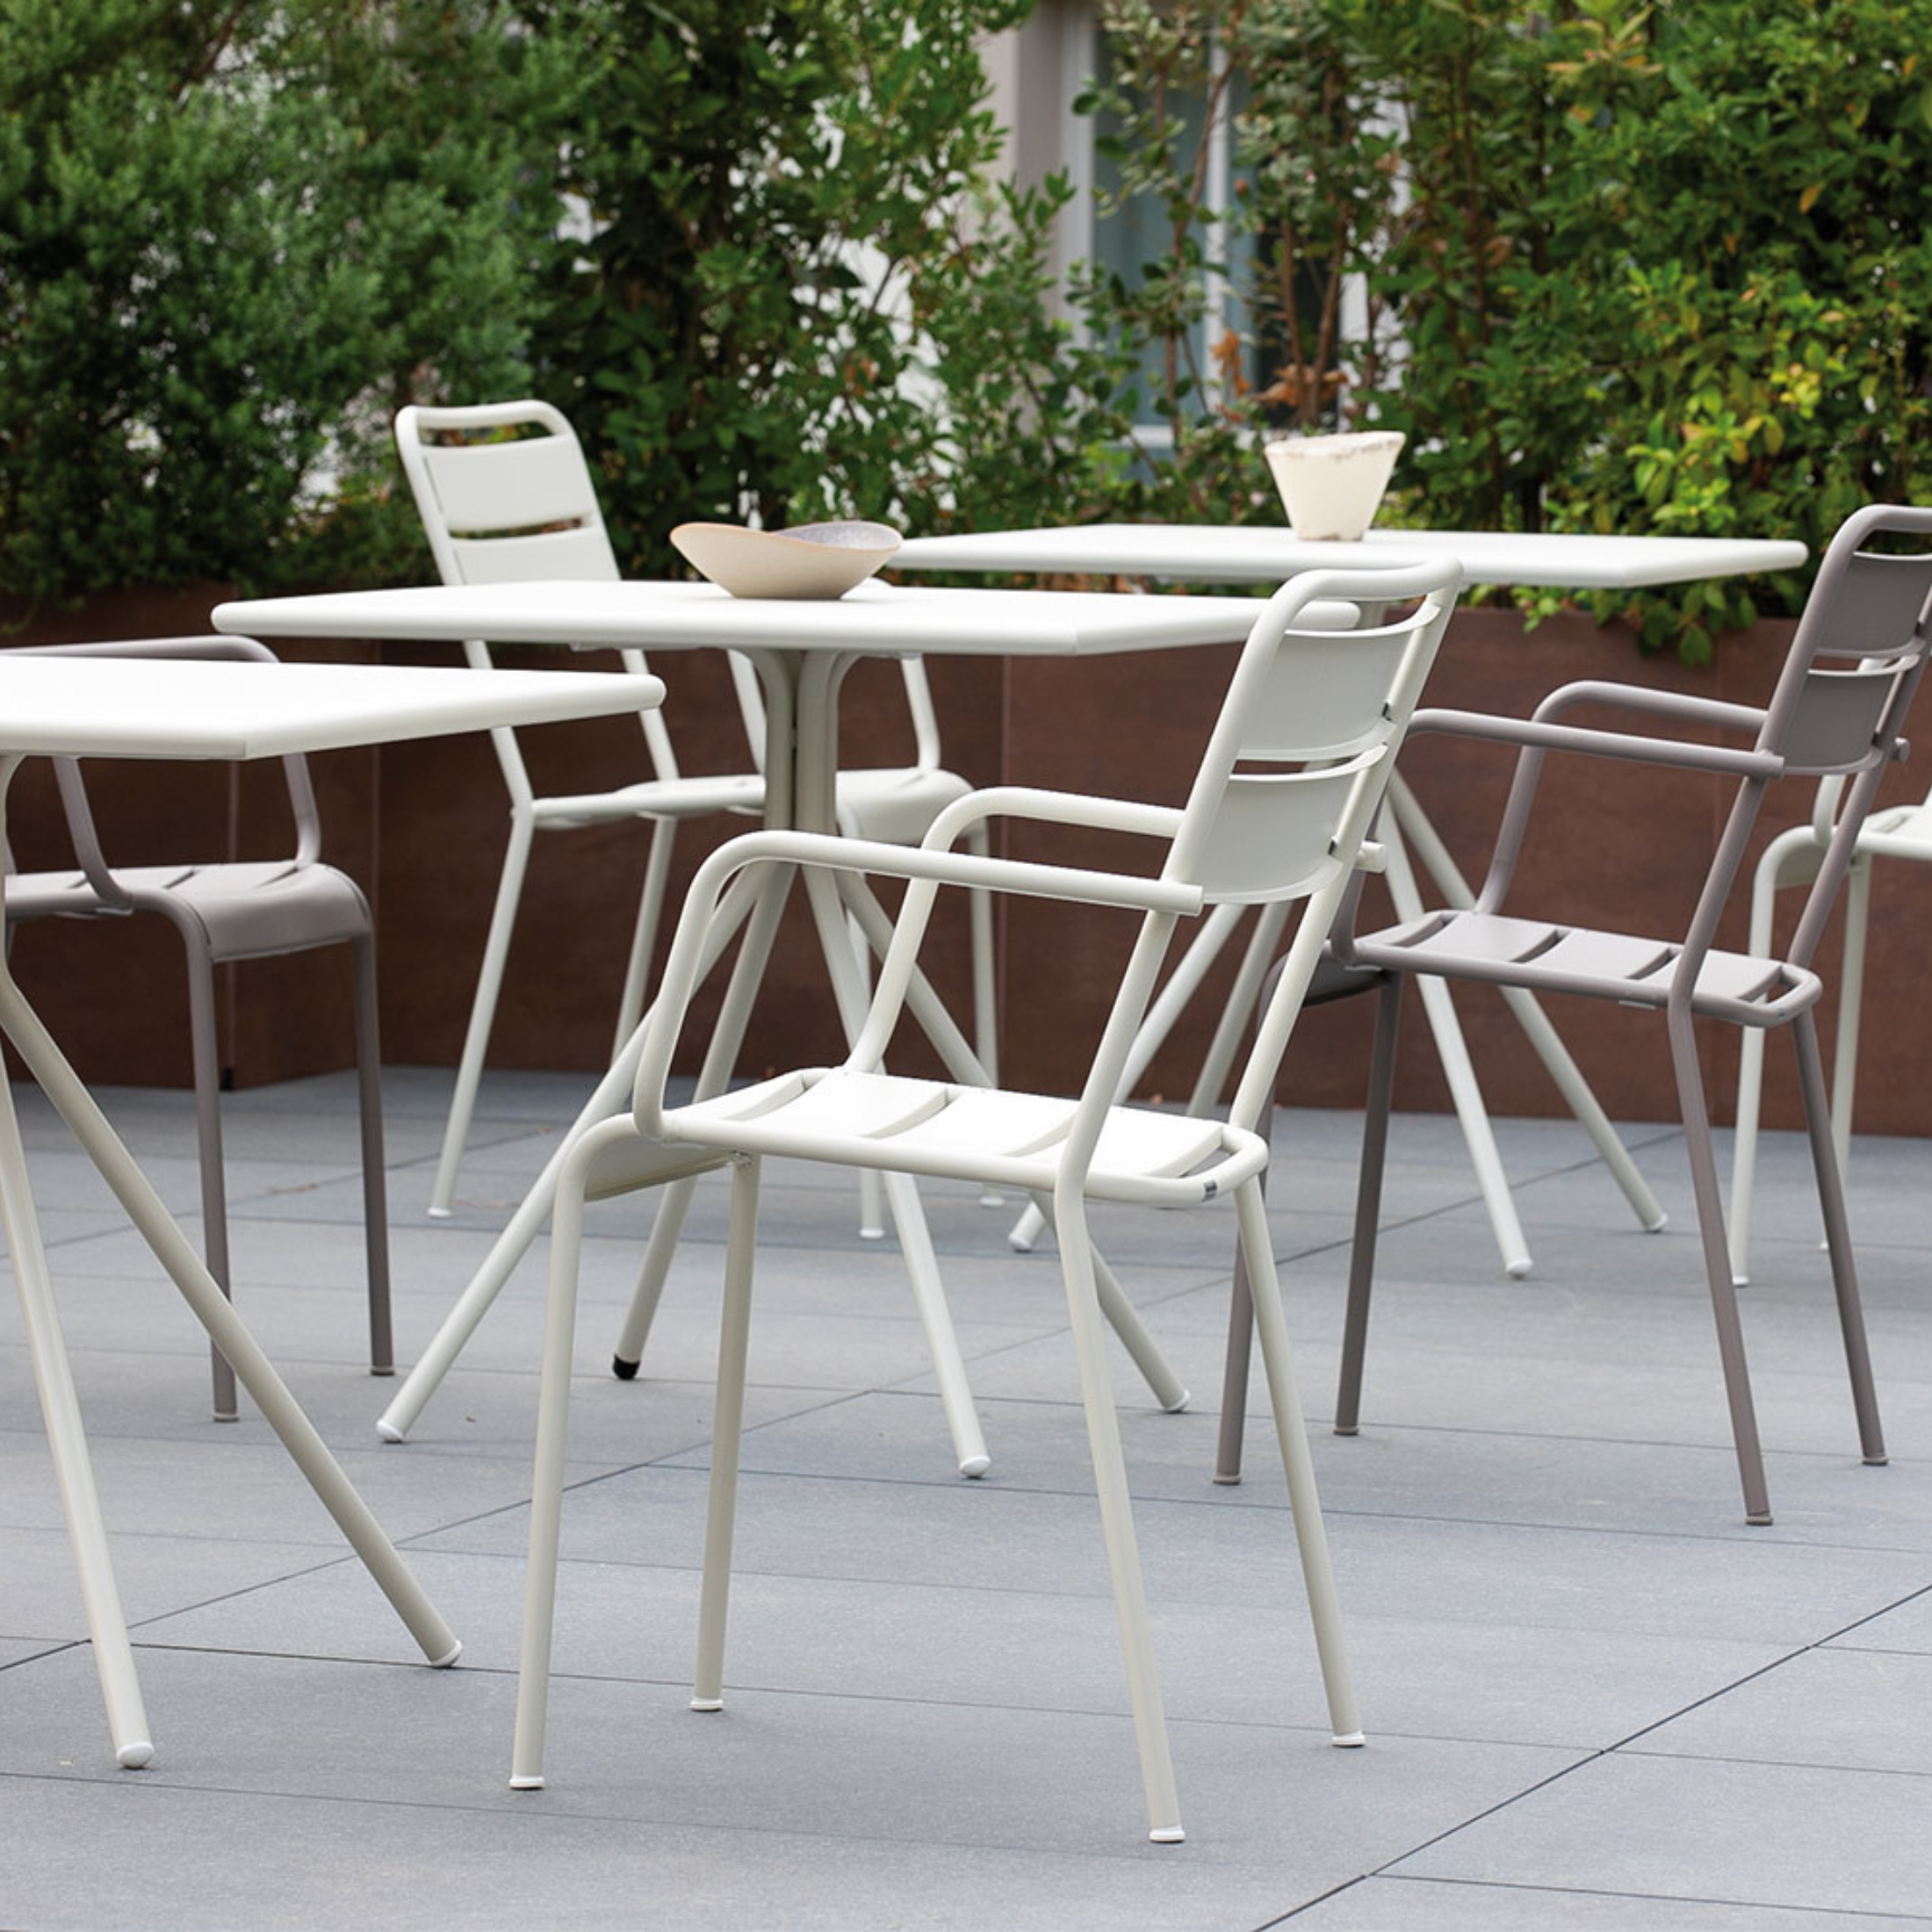 Tavolo quadrato in metallo zincato "Twist19" da bar e giardino h 75 cm